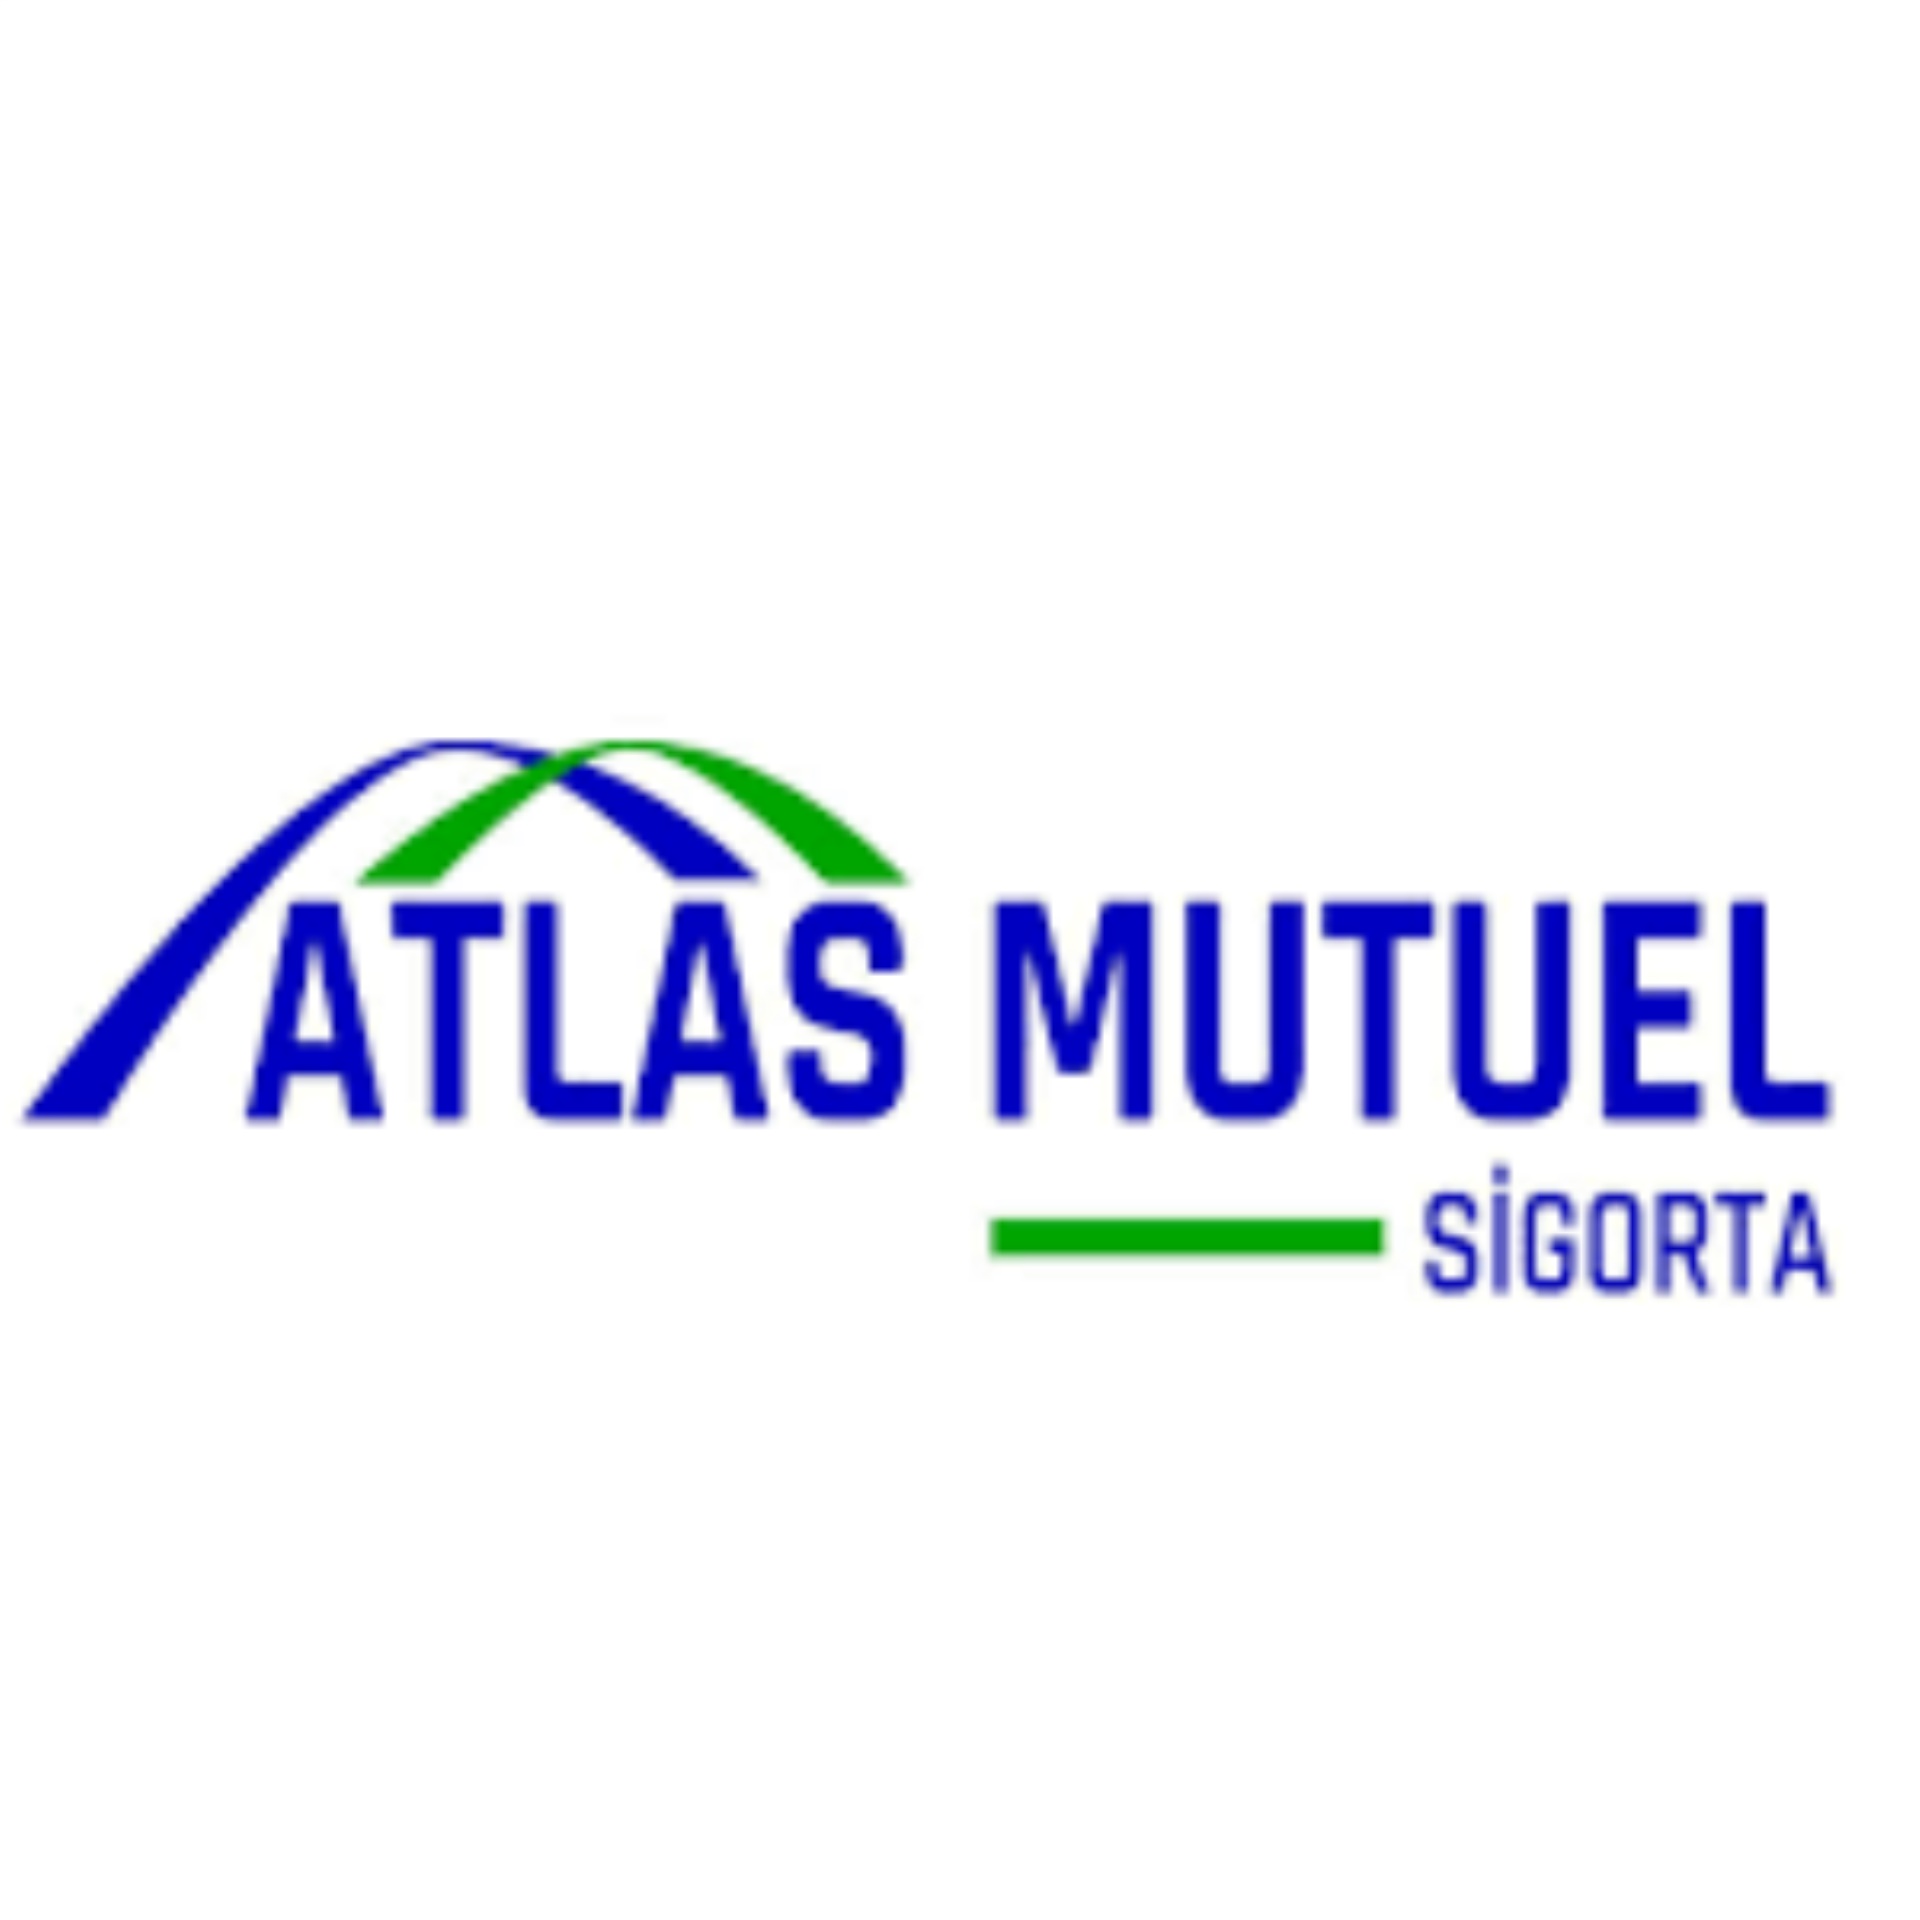 Atlas Mutuel